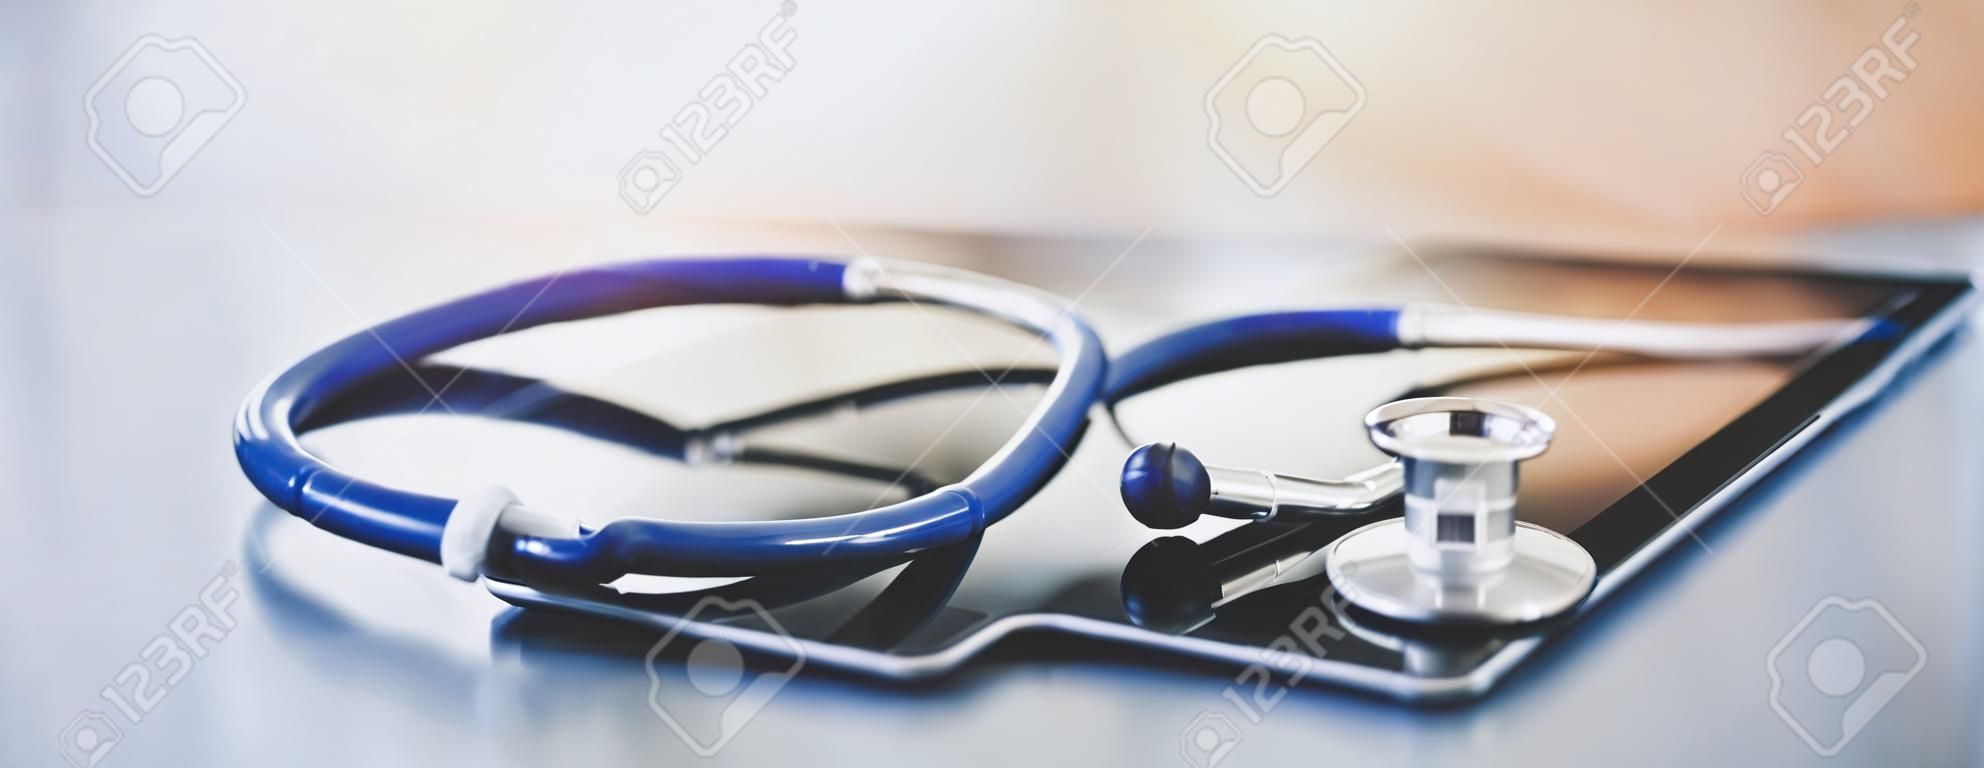 Apparecchiature mediche: stetoscopio blu e tablet su sfondo bianco.